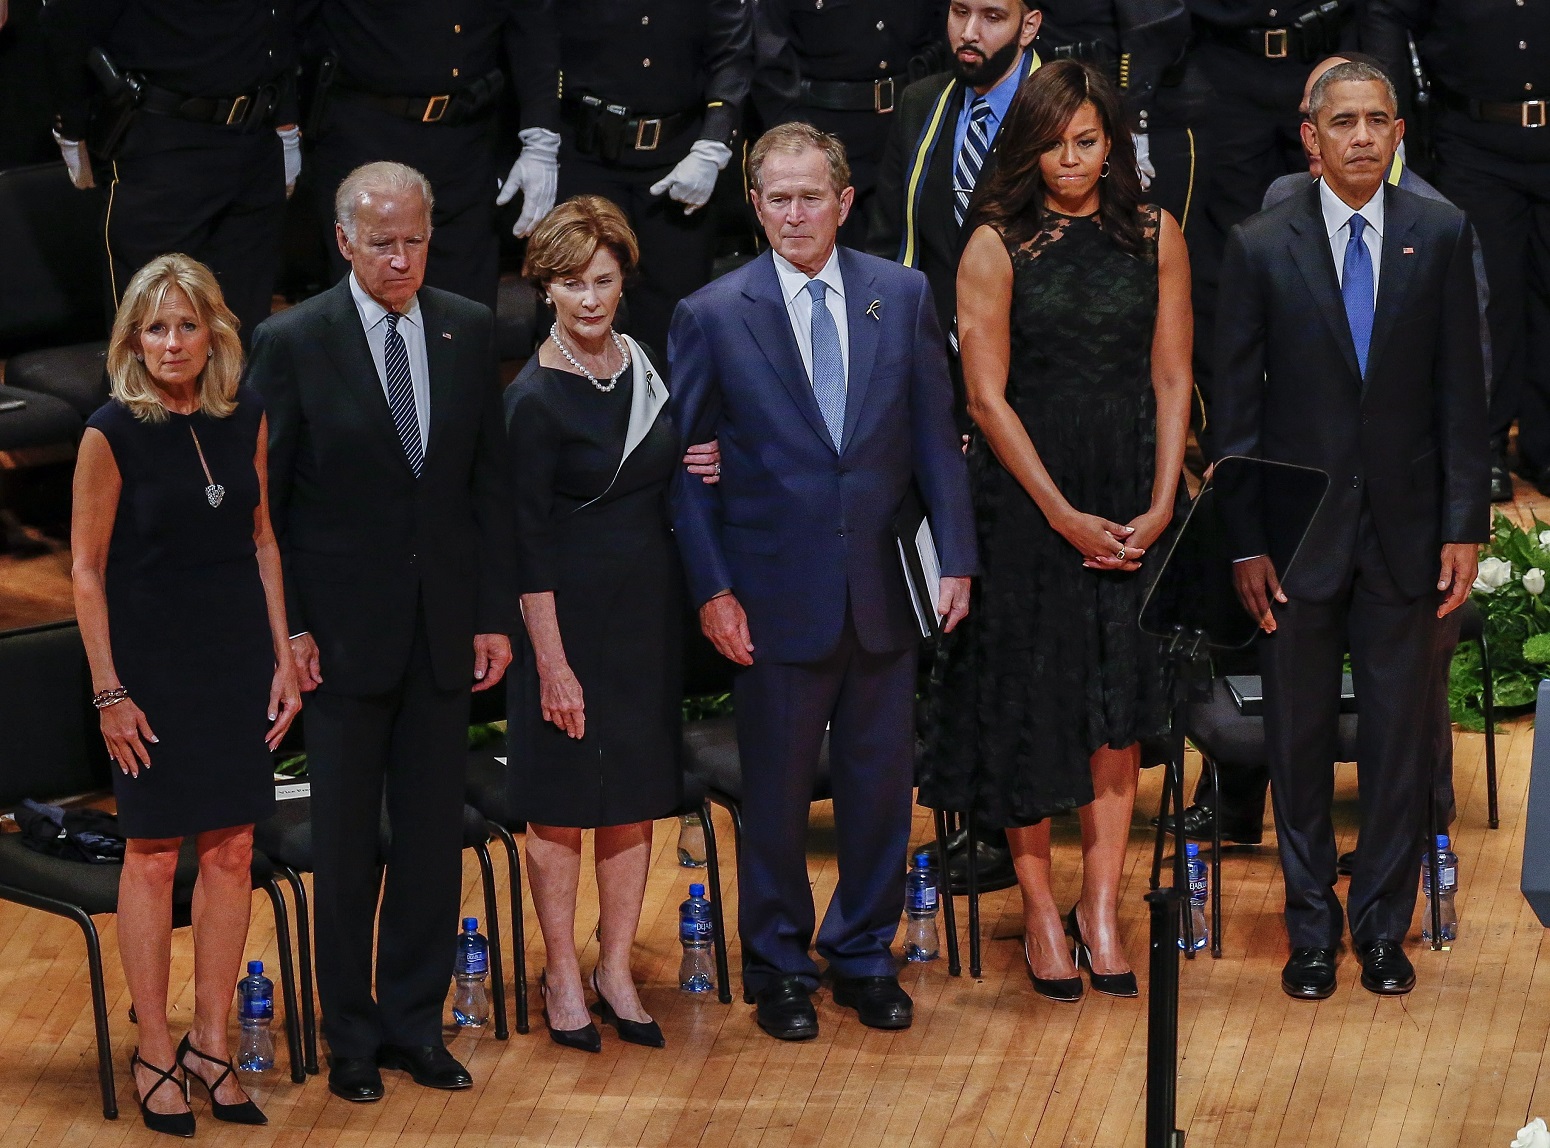 Dallas, 2016. július 12. Barack Obama amerikai elnök, és neje, Michelle Obama, George W. Bush volt amerikai elnök és neje, Laura Bush, valamint Joe Biden alelnök és felesége, Jill Biden (j-b) a lesbõl meggyilkolt rendõrök tiszteletére tartott megemlékezésen Dallasban 2016. július 12-én. Öt nappal korábban egy orvlövész társasival fehér rendõrökre nyitott tüzet és ötöt megölt, hetet pedig megsebesített, amikor a rendõrök egy feketék elleni rendõri túlkapások miatt rendezett tüntetést biztosítottak. (MTI/EPA/Larry W. Smith)